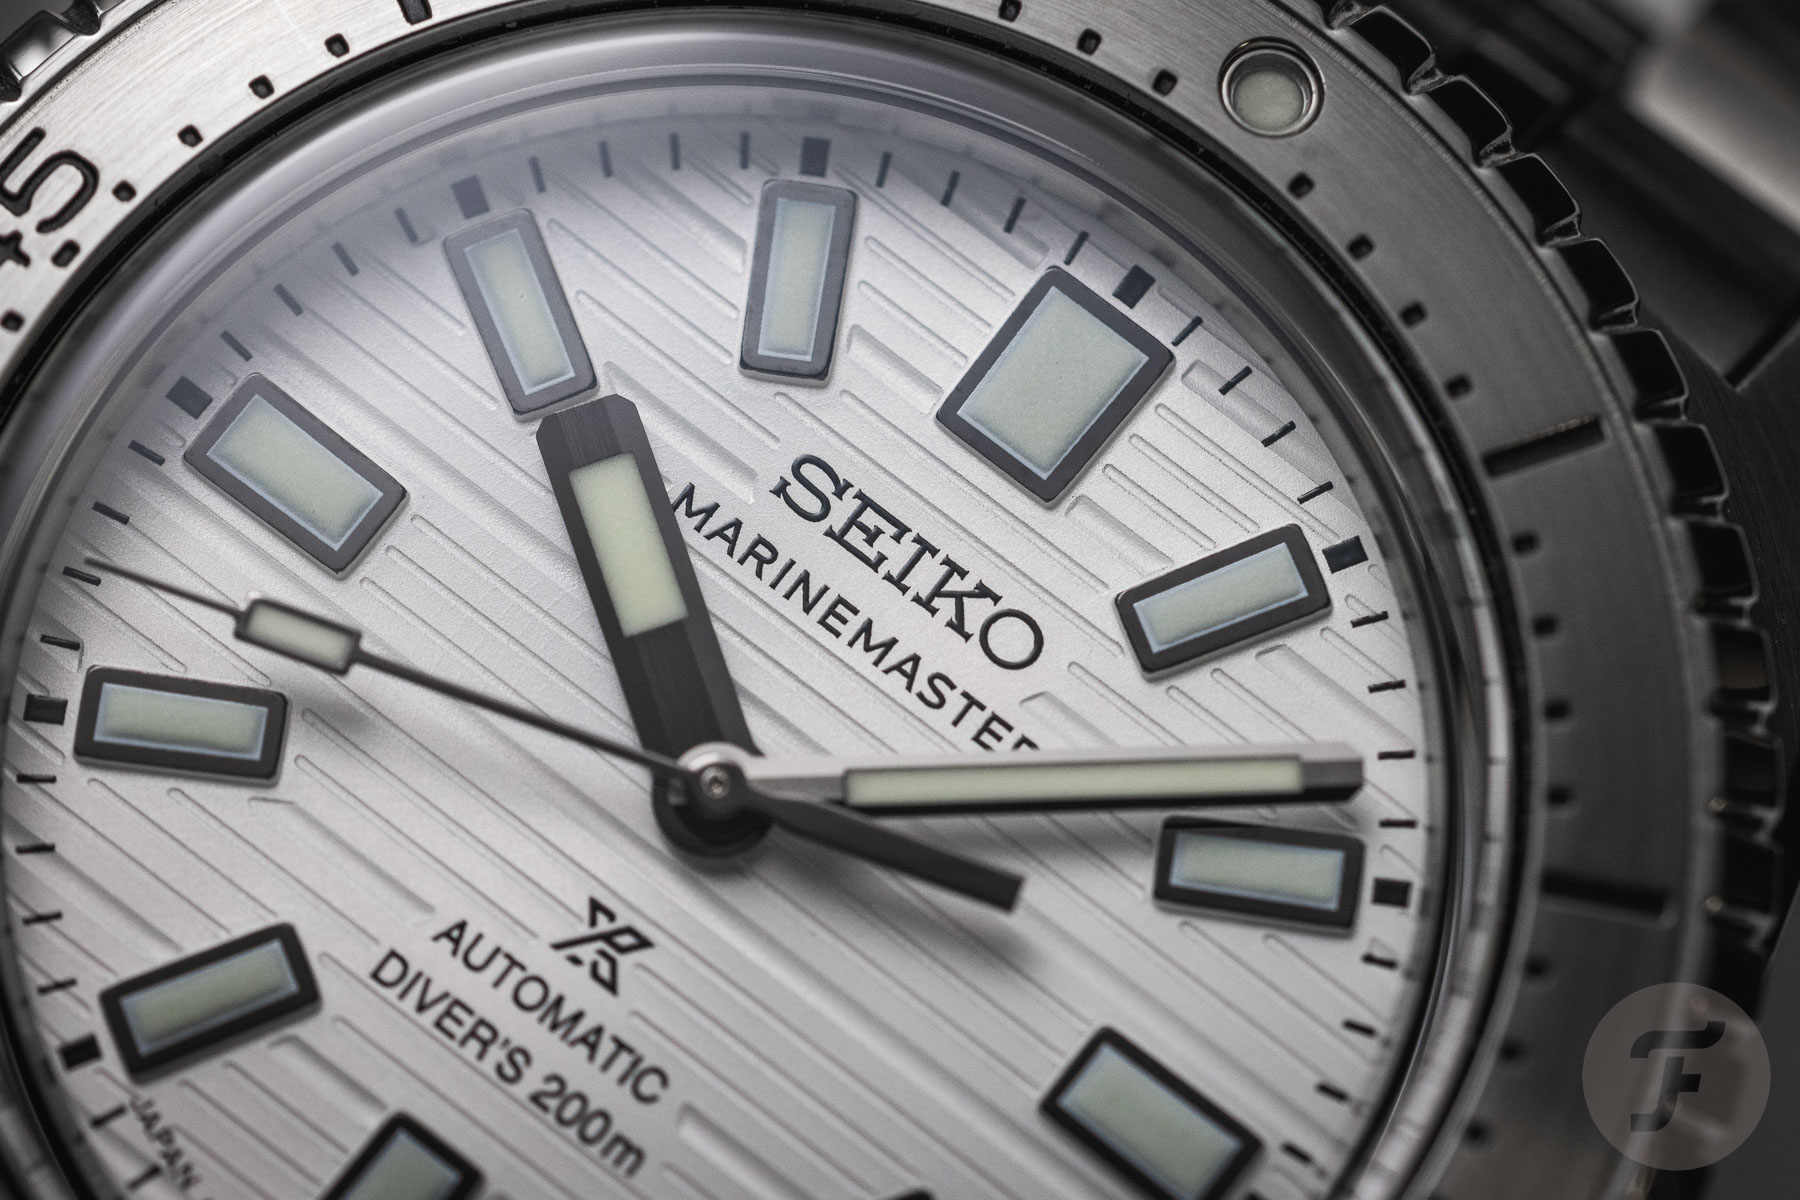 Сравнение Formex Reef 39.5 и Seiko Prospex Marinemaster: Которые часы лучше?